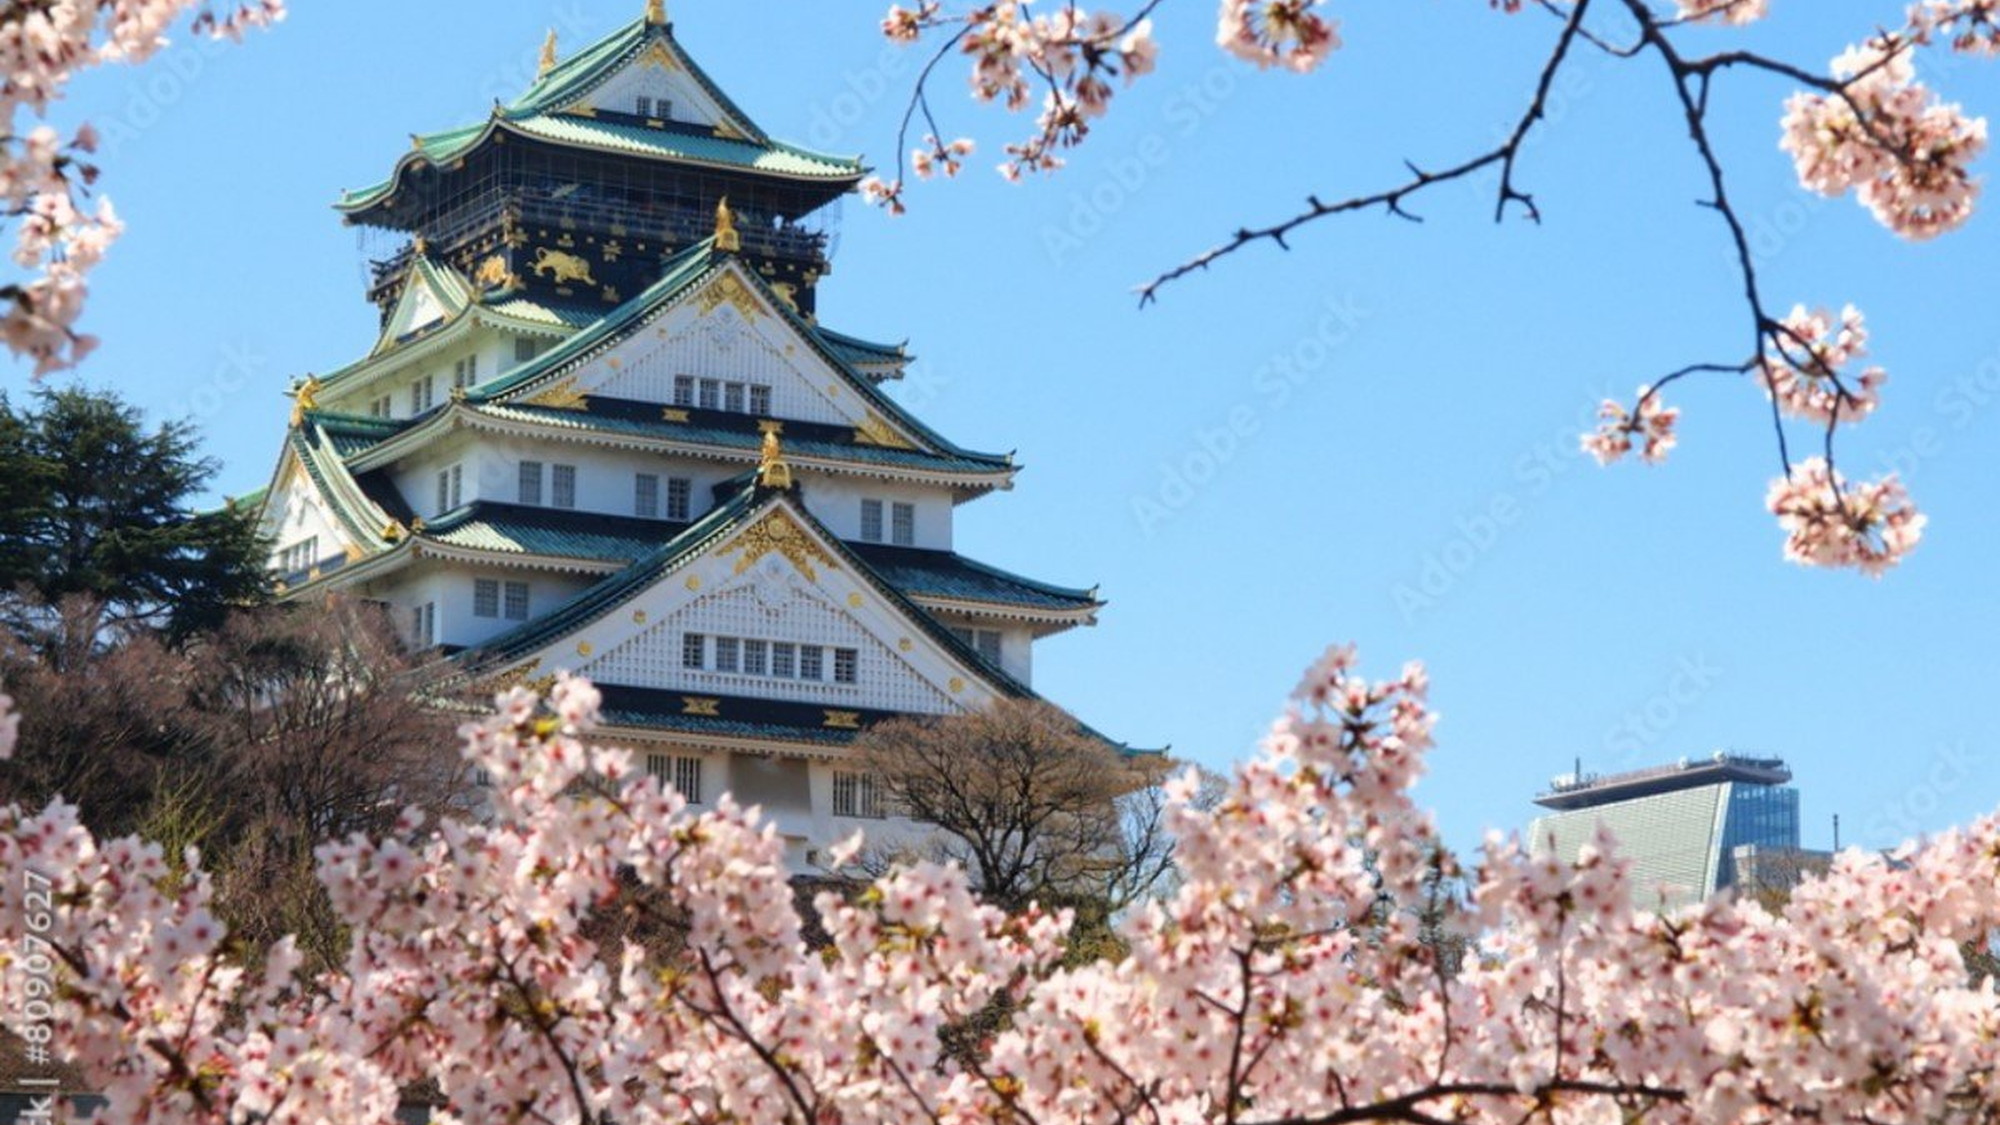 【大阪城】大阪城は大阪のシンボルで、桜の名所としても知られるエリアです。